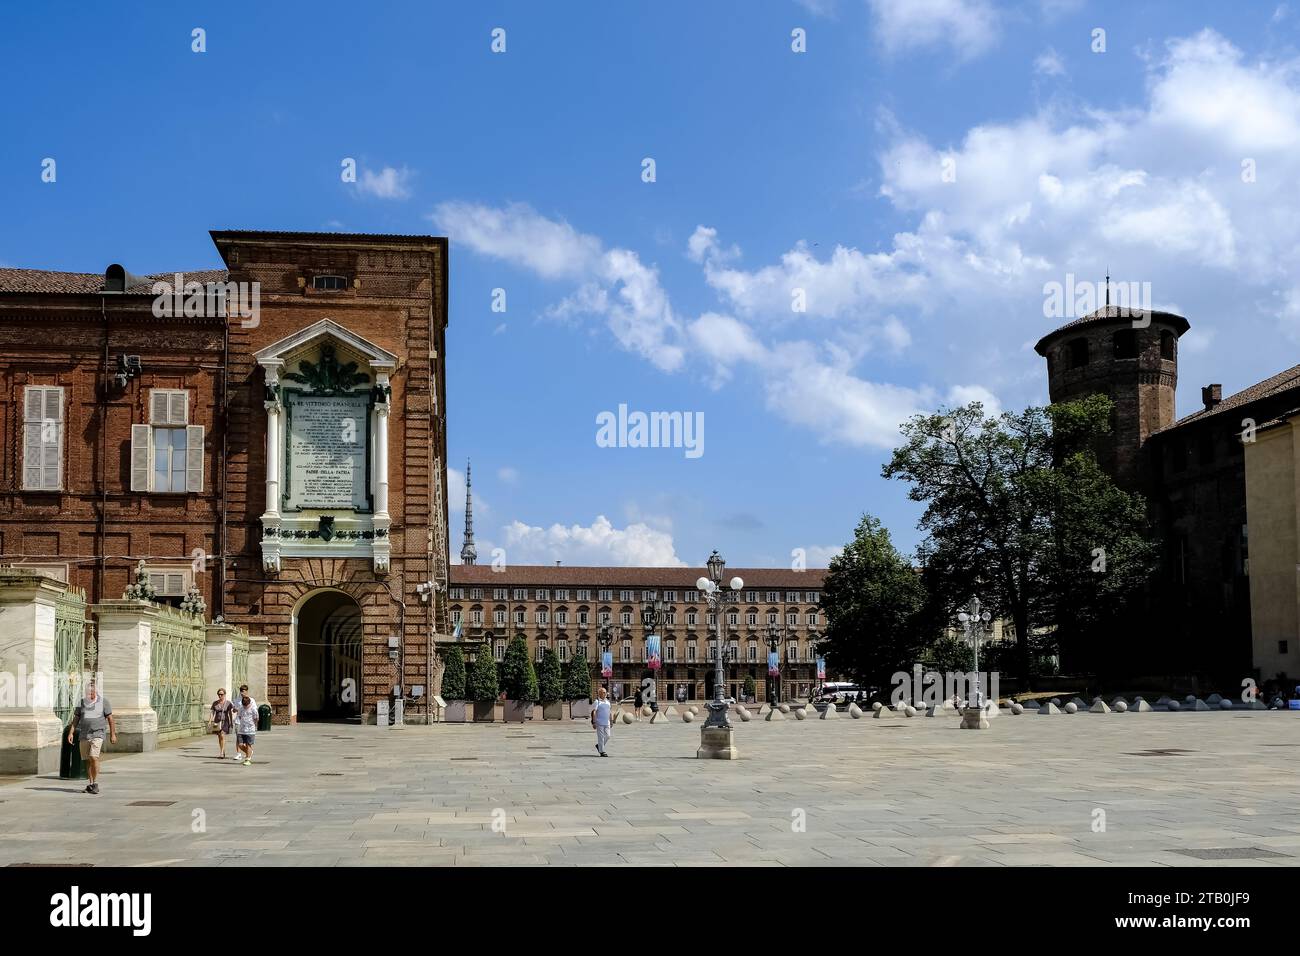 Blick auf die Piazza Castello, einen prominenten Marktplatz im Stadtzentrum von Turin, mit mehreren Sehenswürdigkeiten, Museen, Theatern und Cafés Stockfoto